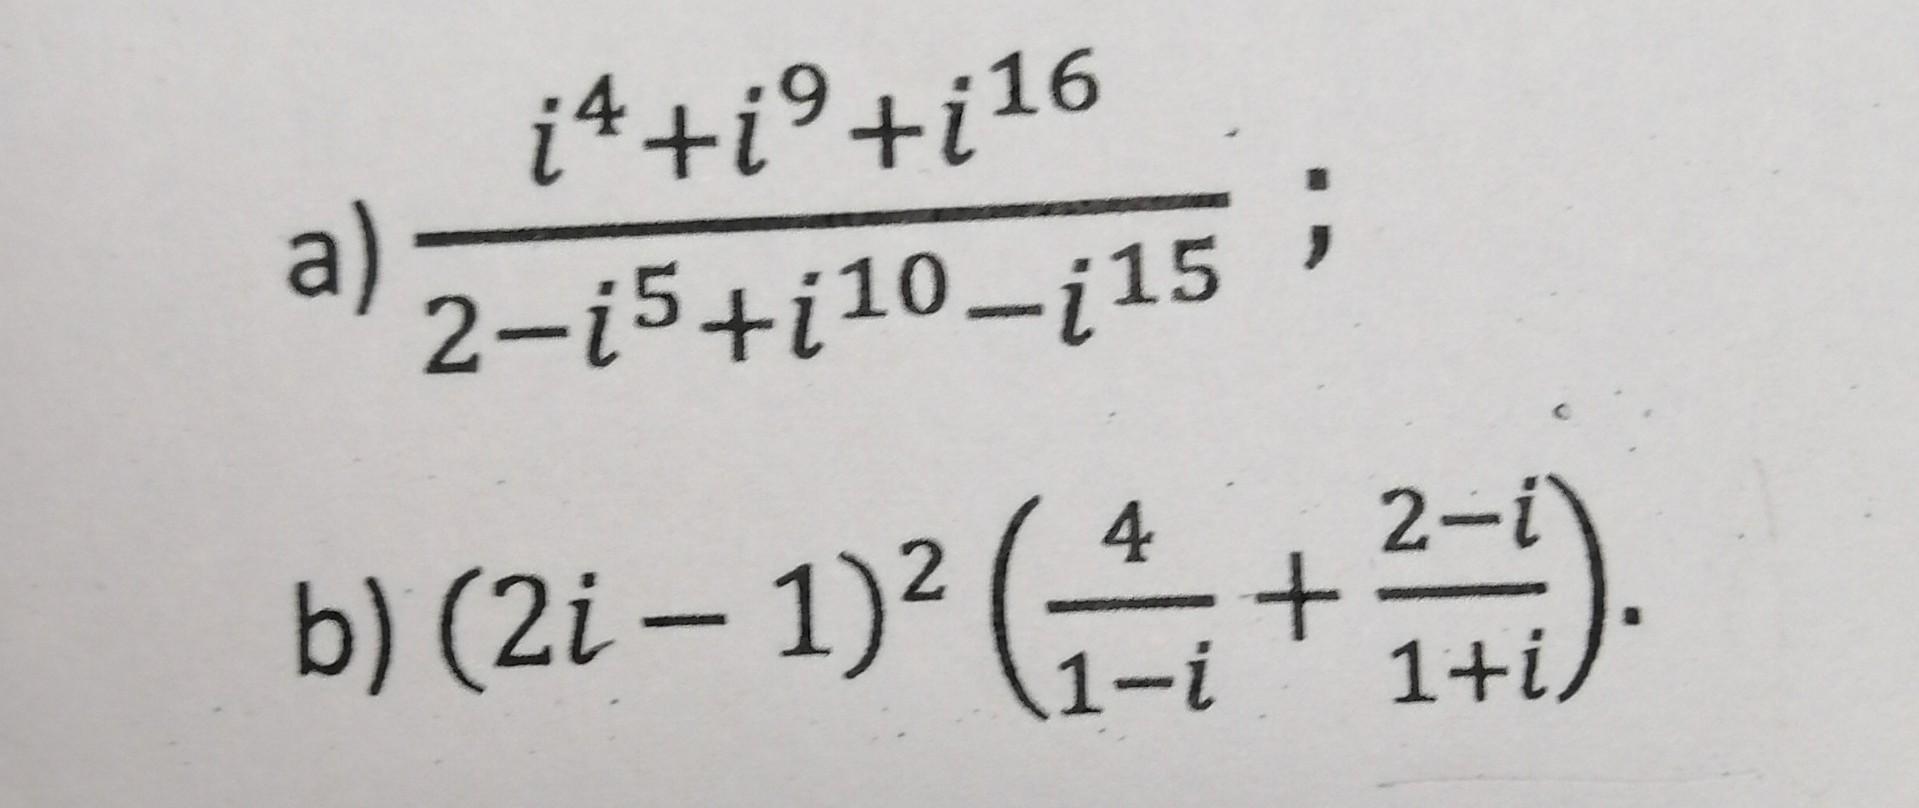 ( frac{i^{4}+i^{9}+i^{16}}{2-i^{5}+i^{10}-i^{15}} ) ( (2 i-1)^{2}left(frac{4}{1-i}+frac{2-i}{1+i}ight) )